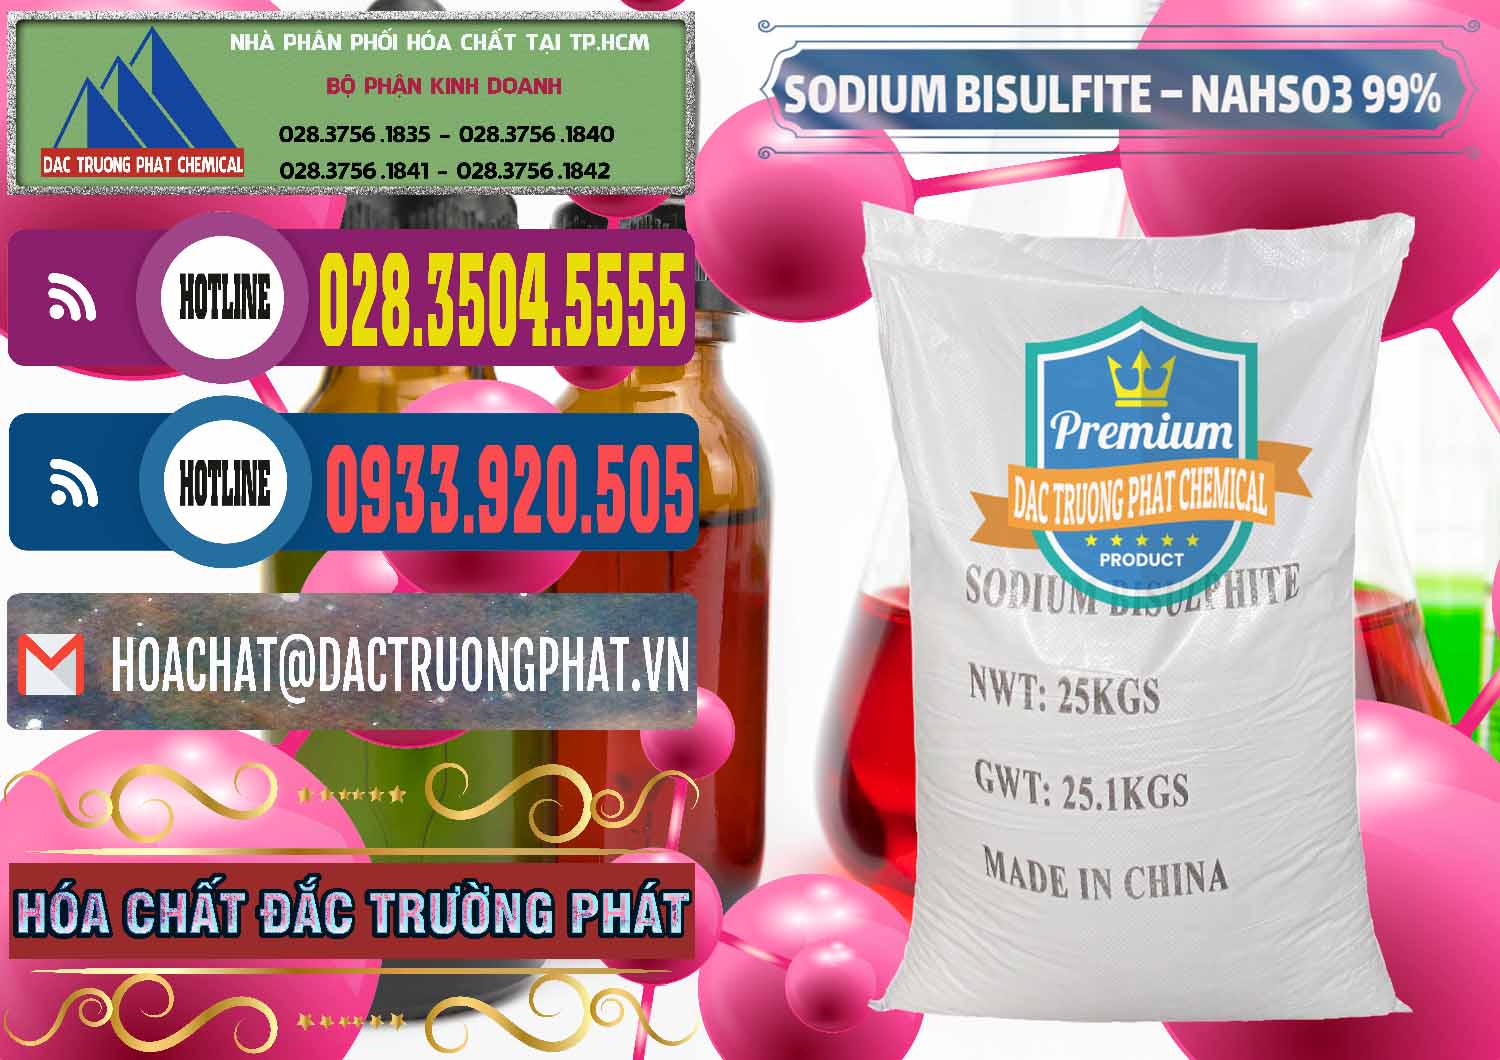 Chuyên bán - phân phối Sodium Bisulfite – NAHSO3 Trung Quốc China - 0140 - Nơi bán ( cung cấp ) hóa chất tại TP.HCM - muabanhoachat.com.vn